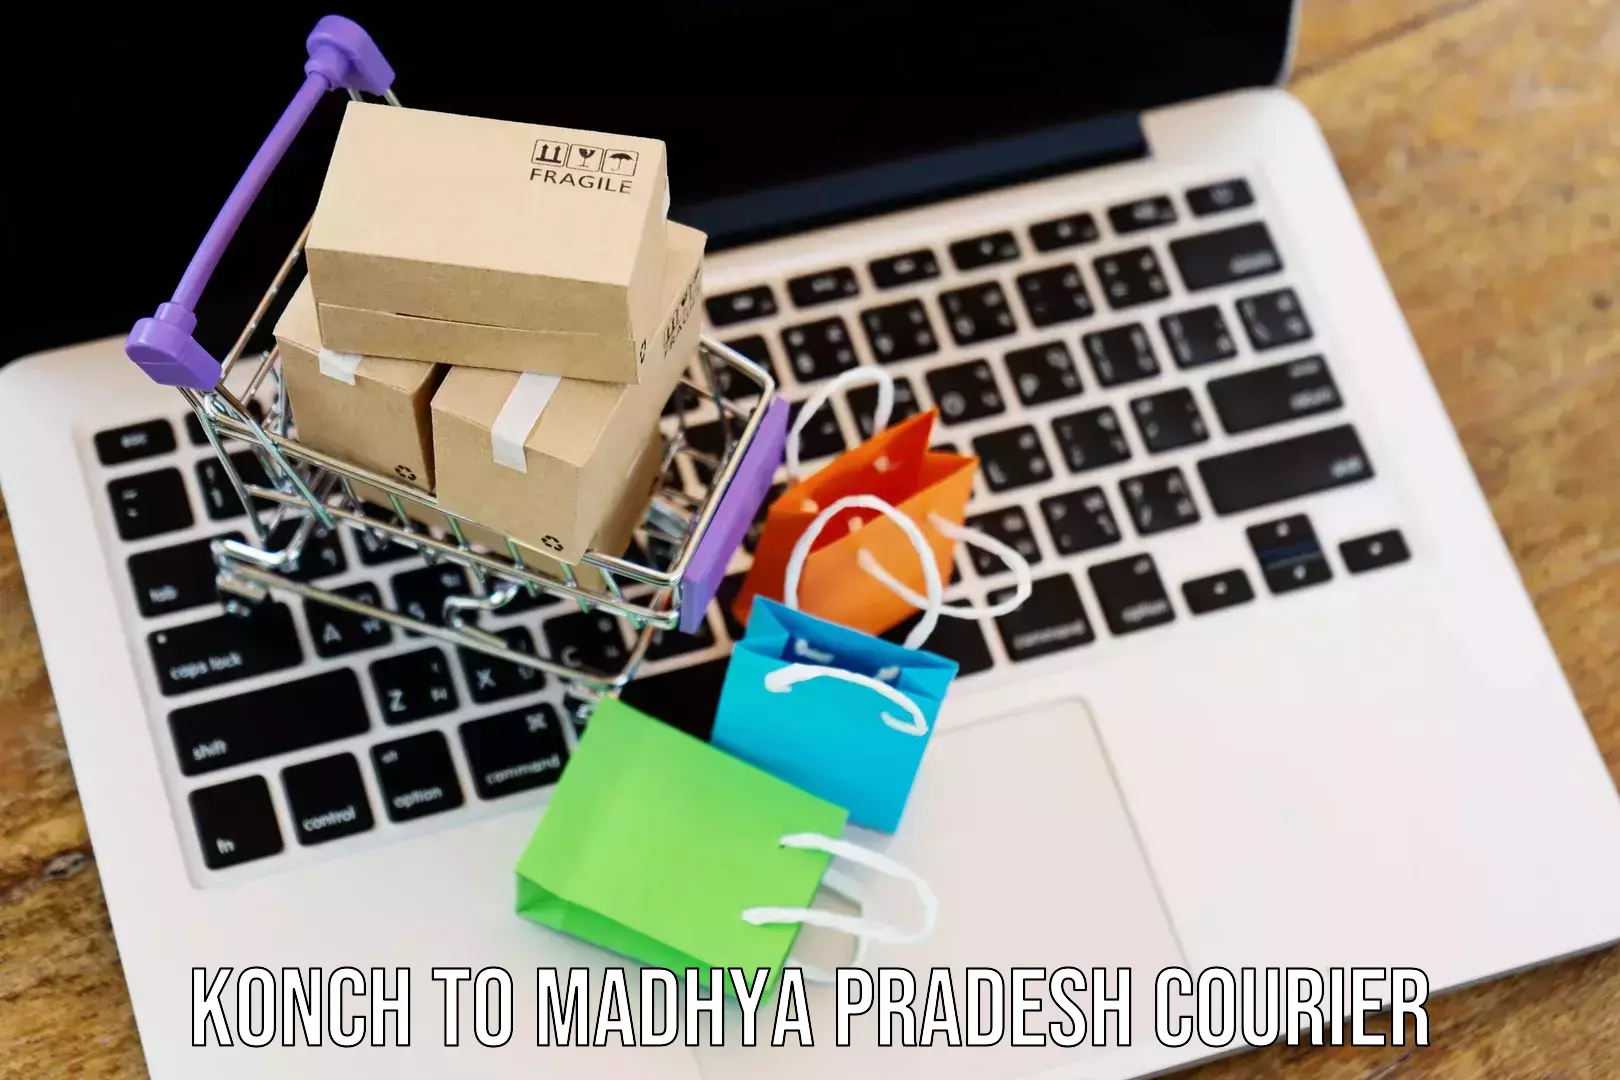 Easy return solutions Konch to Madhya Pradesh